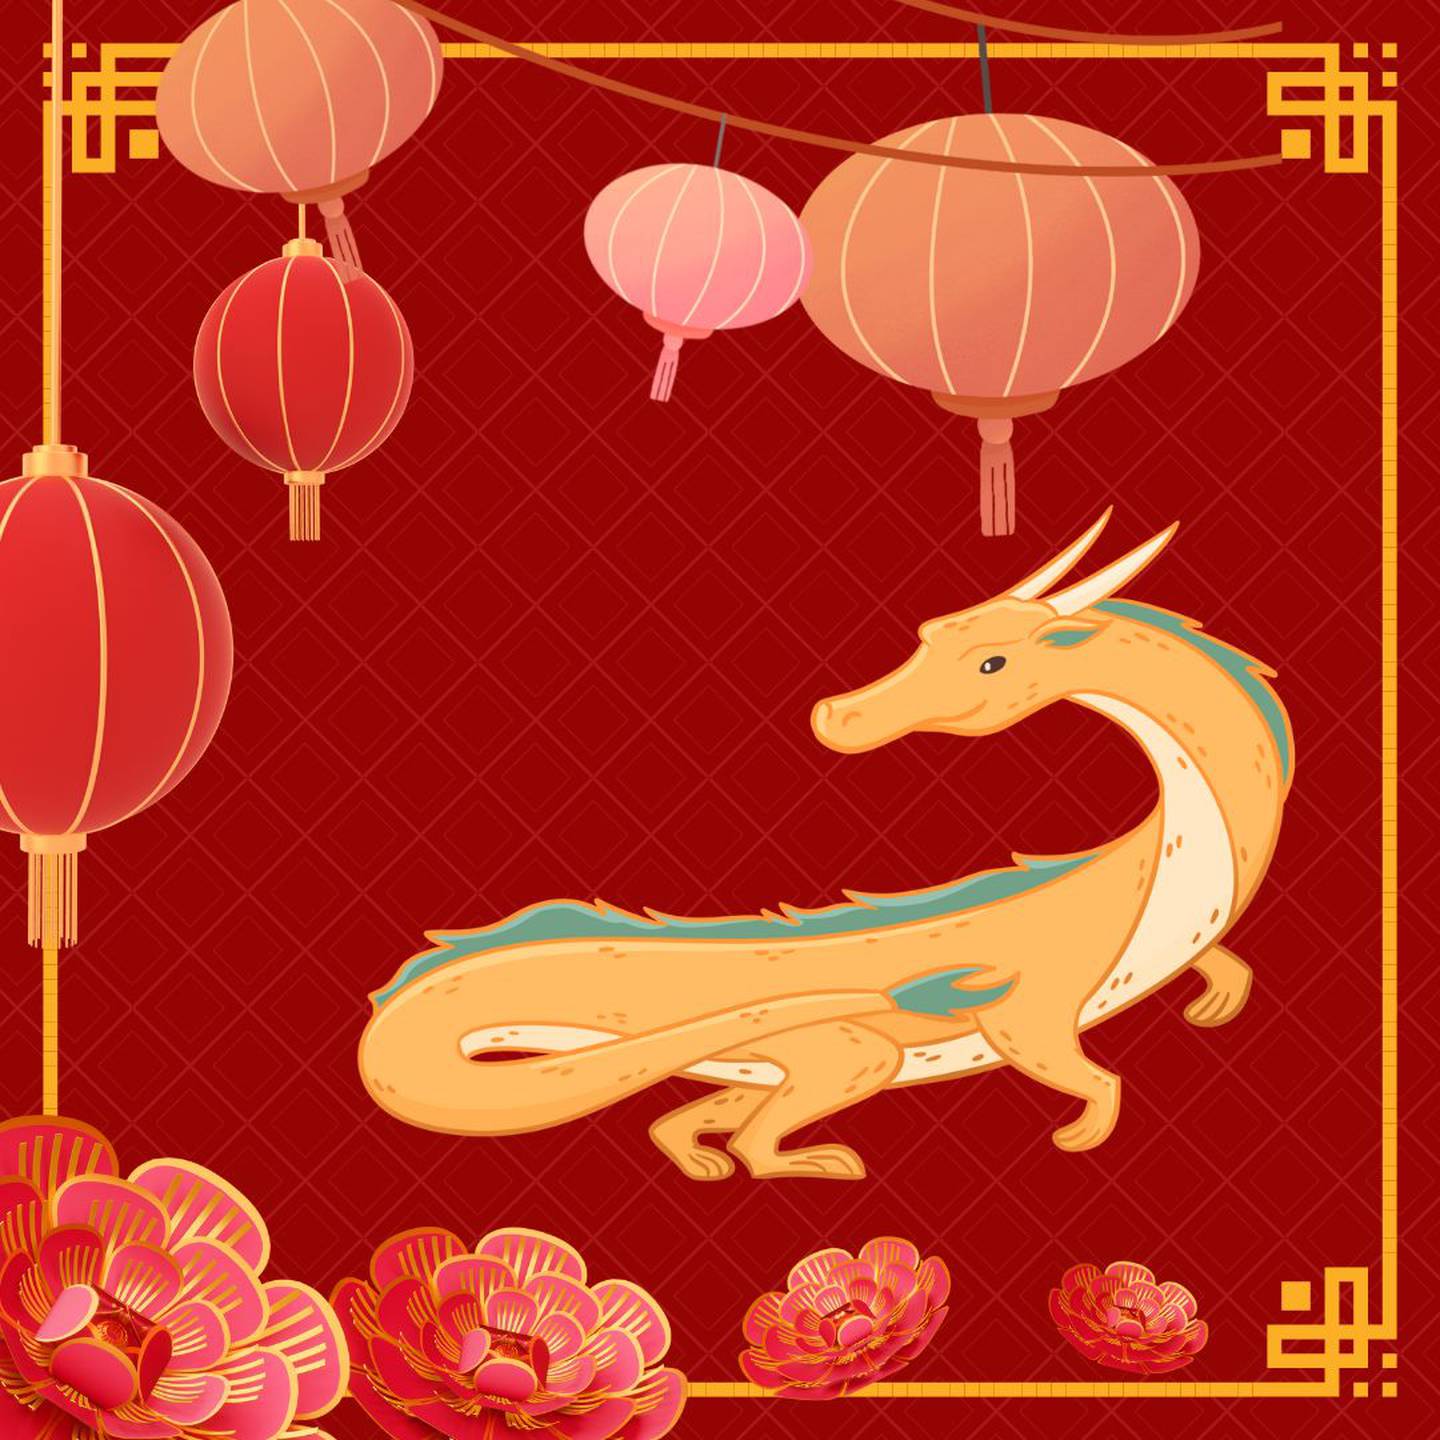 Caricatura de un dragón amarillo sobre un fondo rojo con motivos orientales.